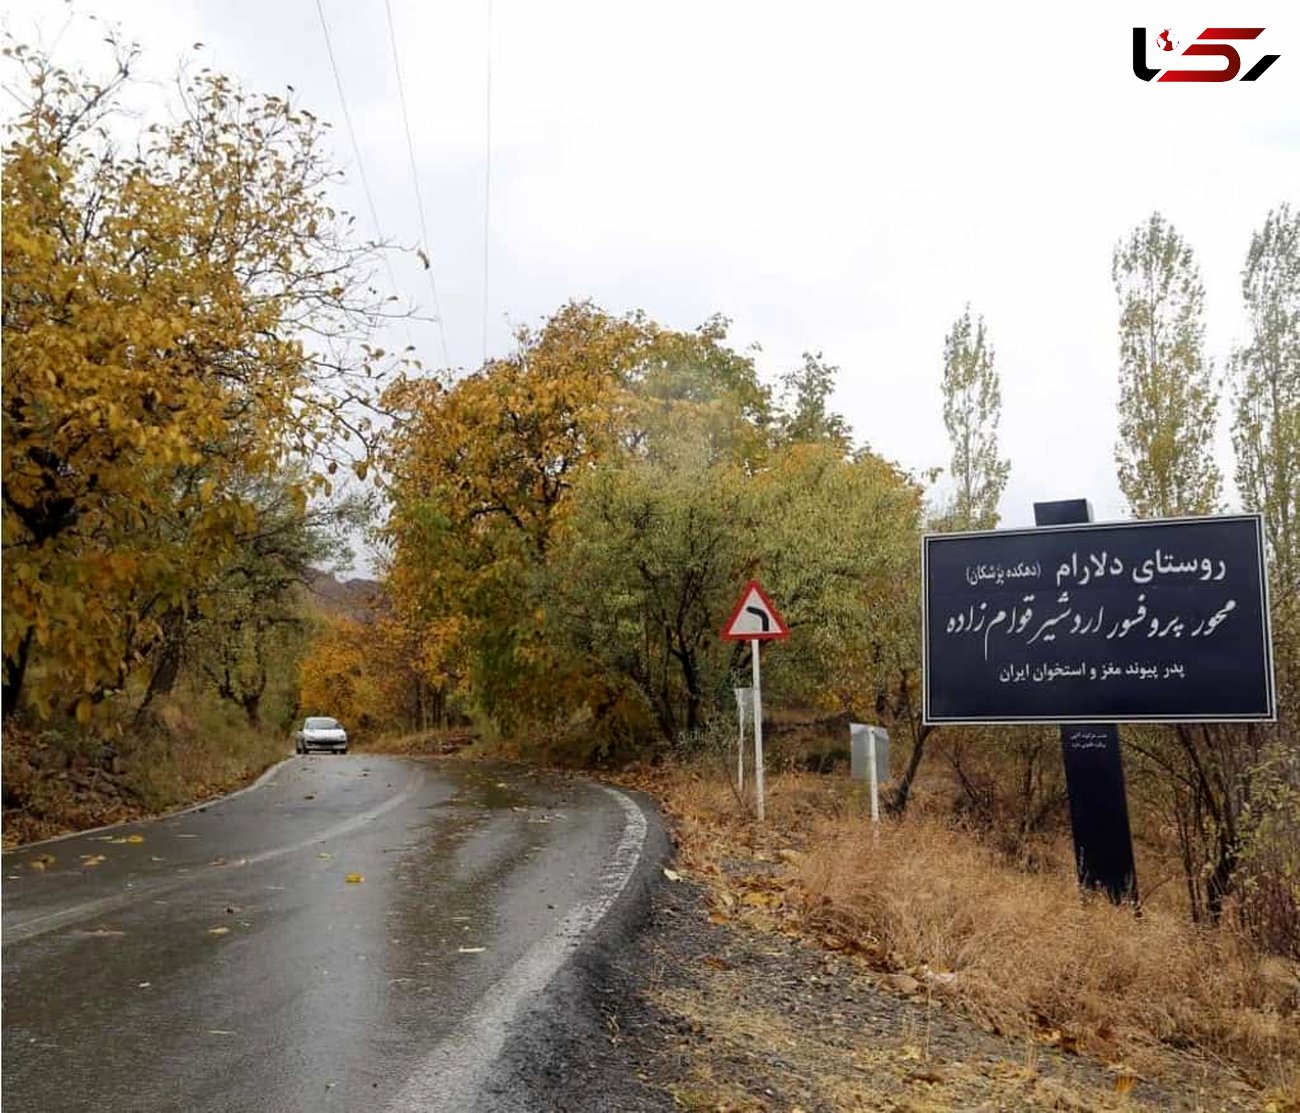 دهکده پزشکان ایران کجاست؟  / 175 پزشک در این روستا به دنیا آمده اند + تصاویر
